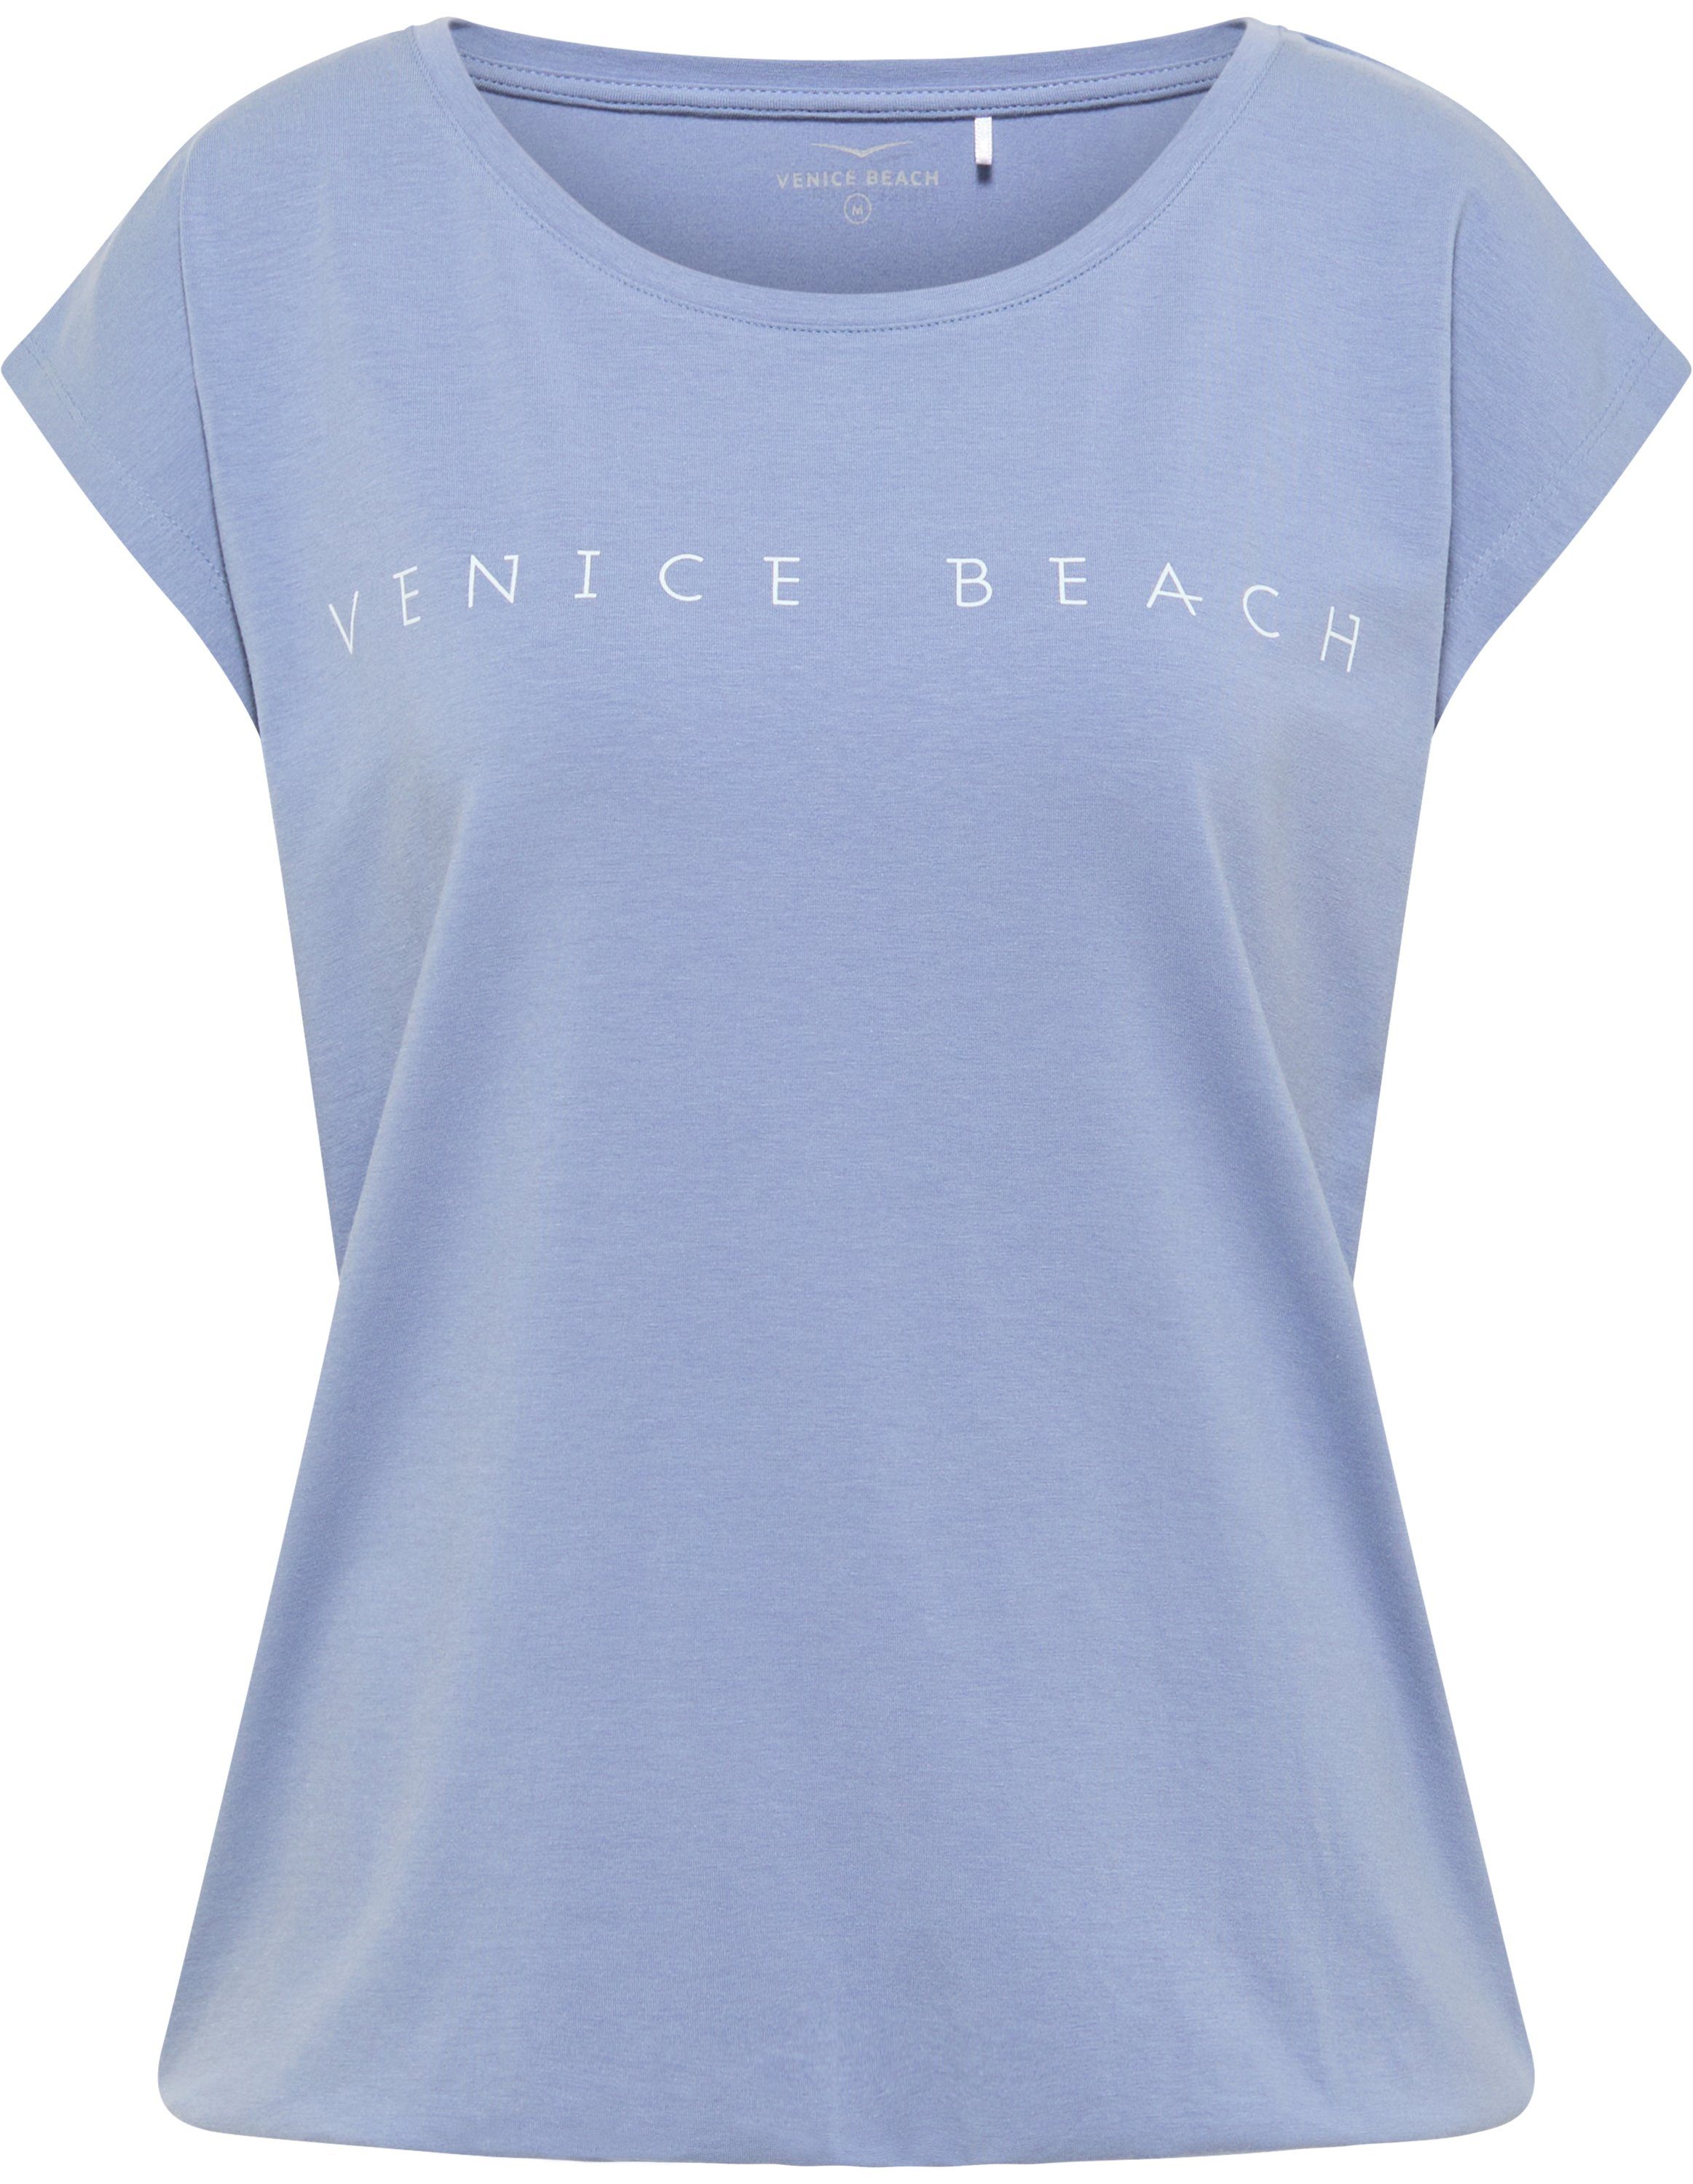 blue Wonder T-Shirt delft VB Beach Venice T-Shirt